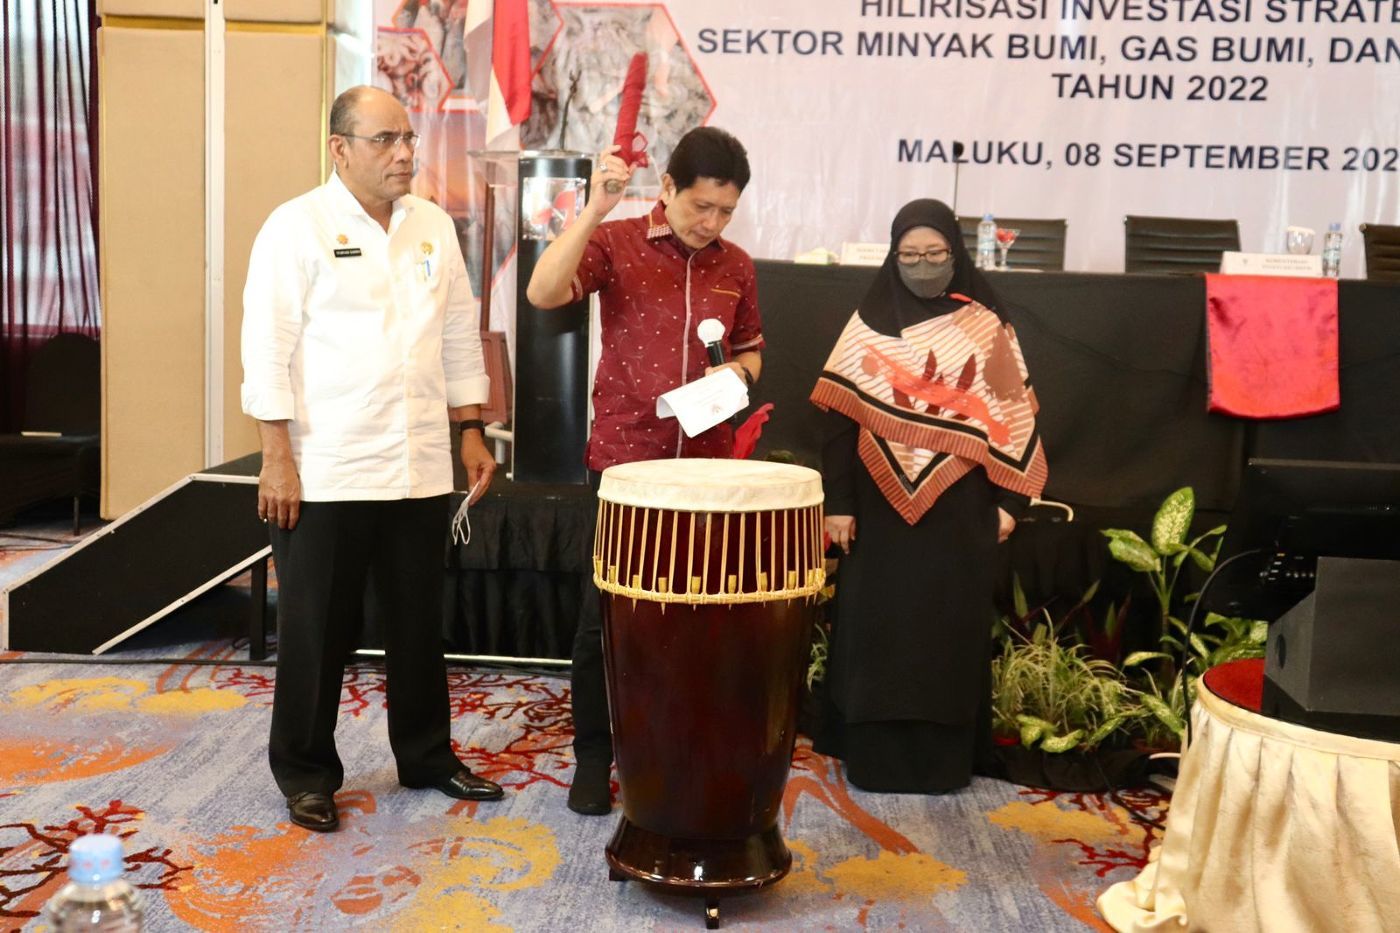 Kementerian Investasi/BKPM RI Gelar Rakorda Penyusunan Roadmap Hilirisasi Investasi Strategis di Provinsi Maluku